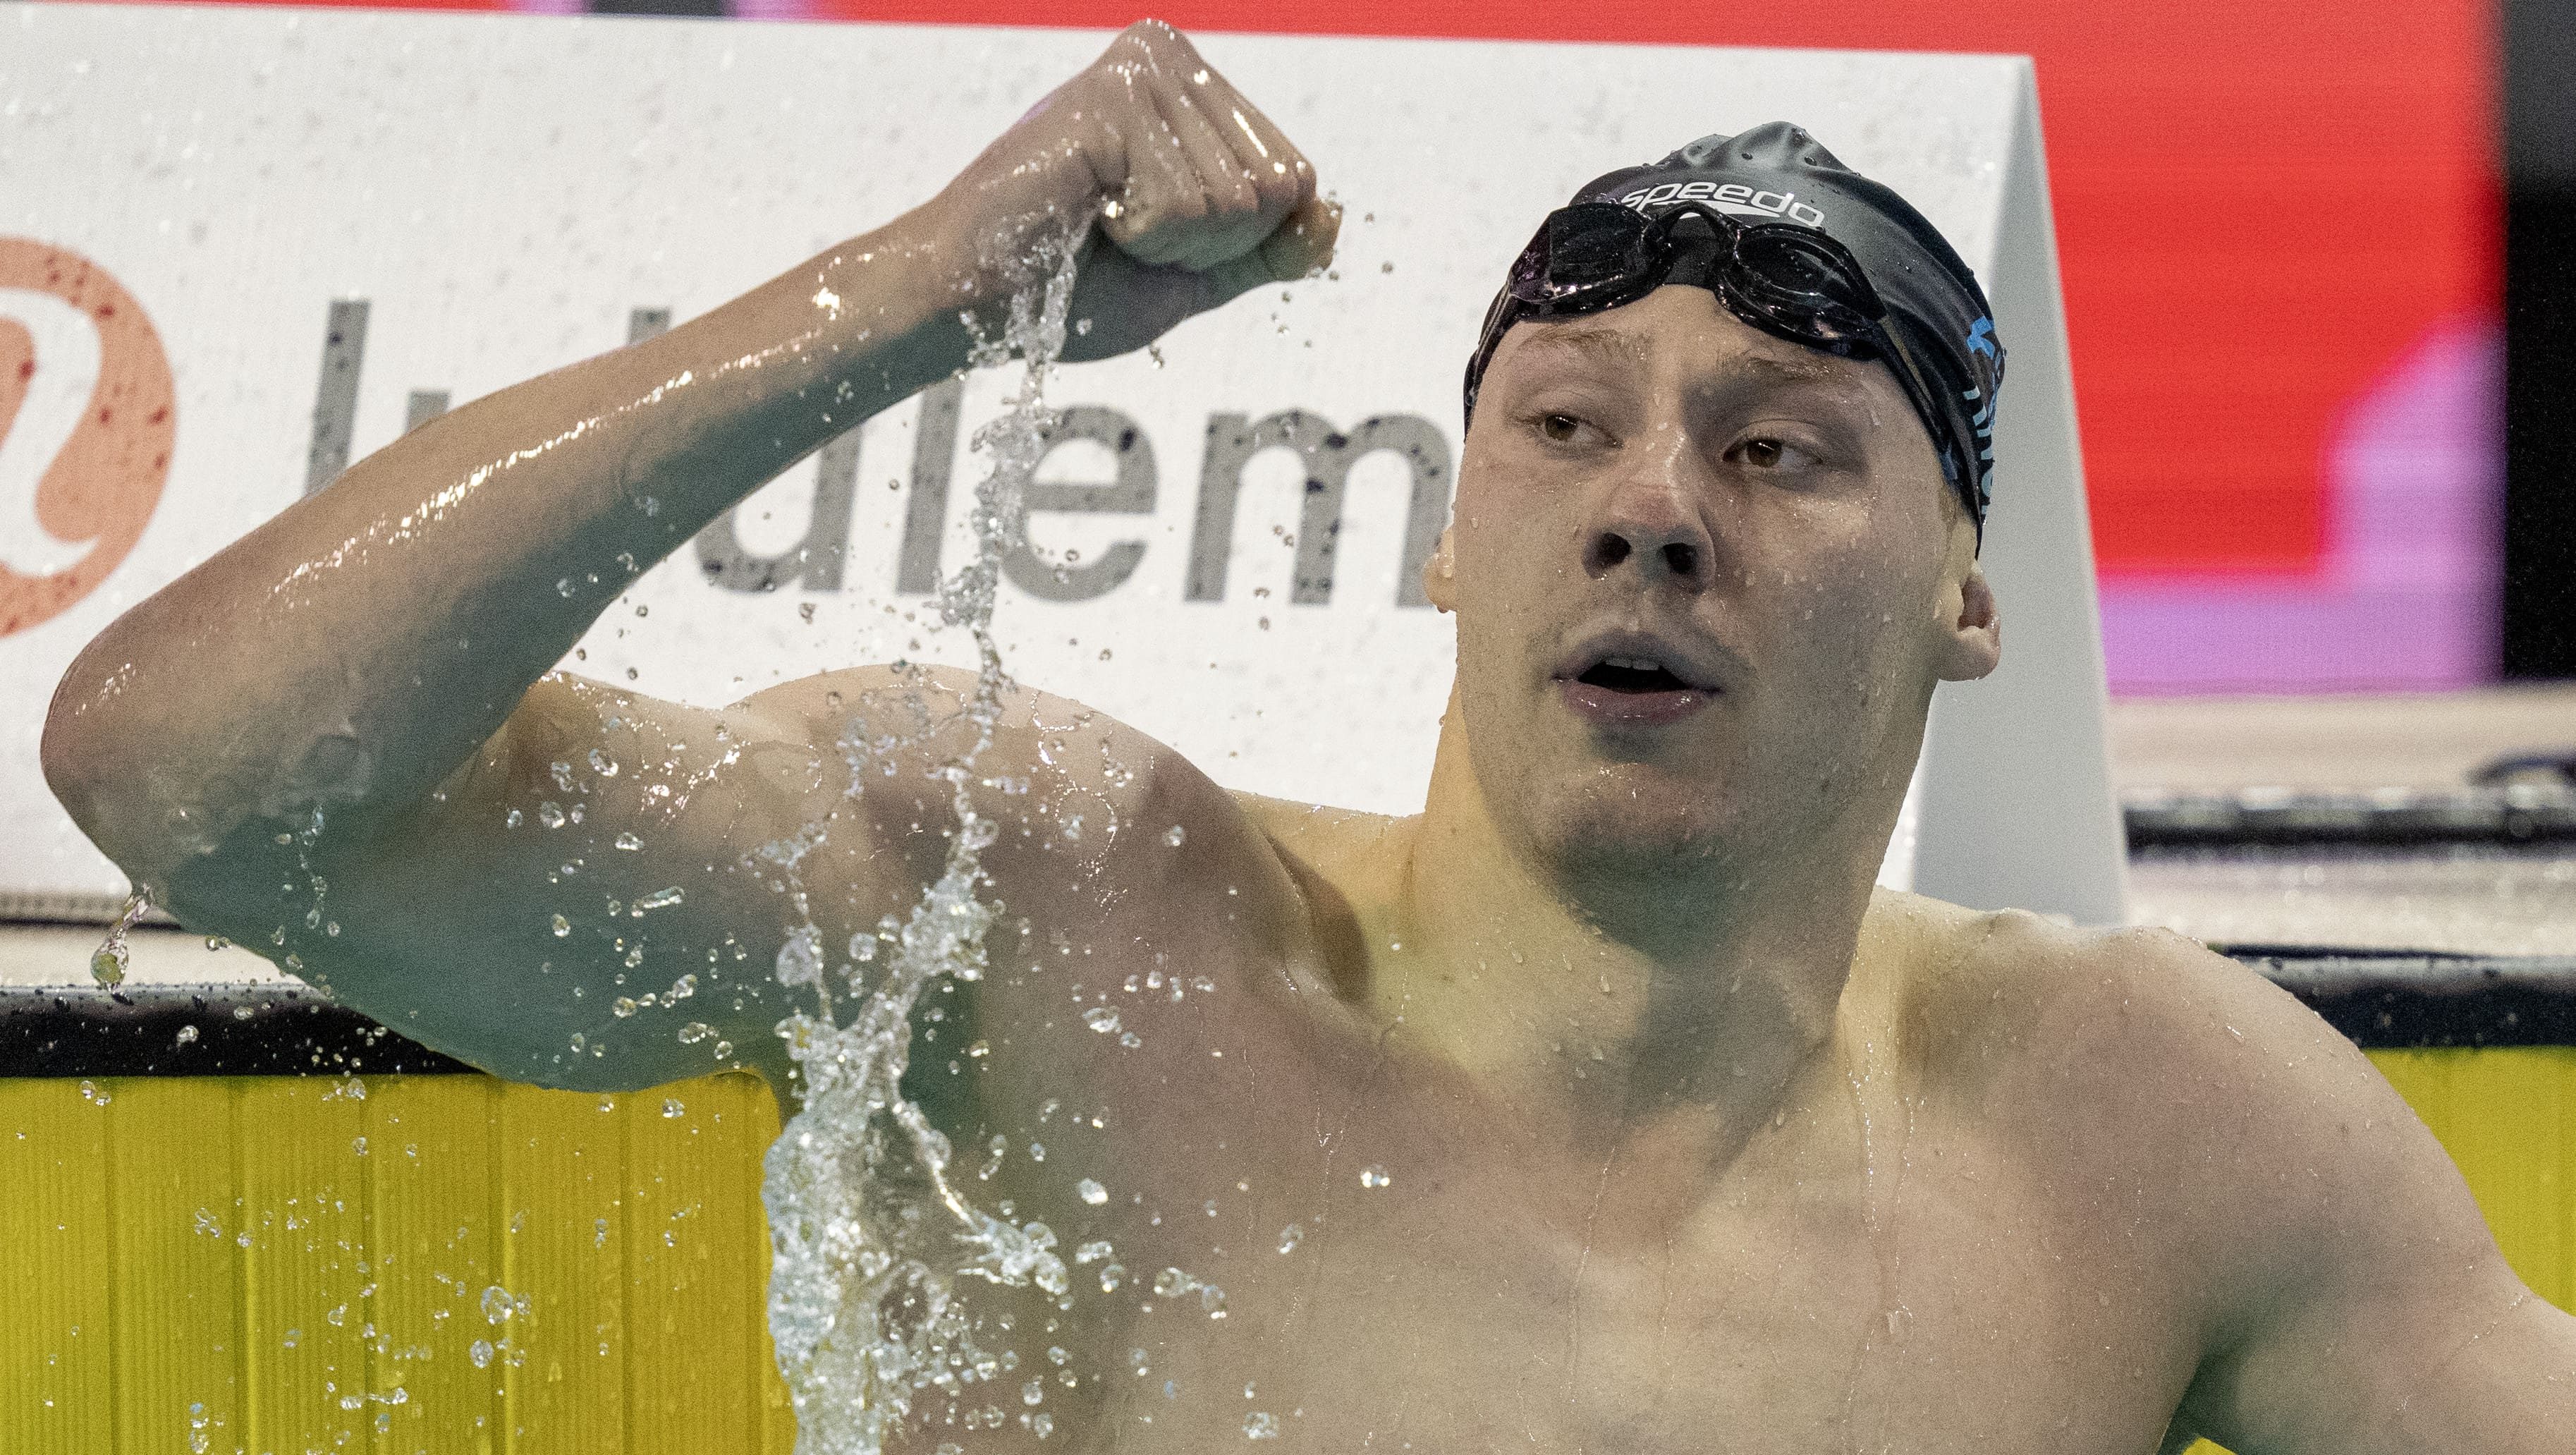 Essais olympiques de natation : McIntosh poursuit sa domination,
records canadiens pour Liendo et Knox